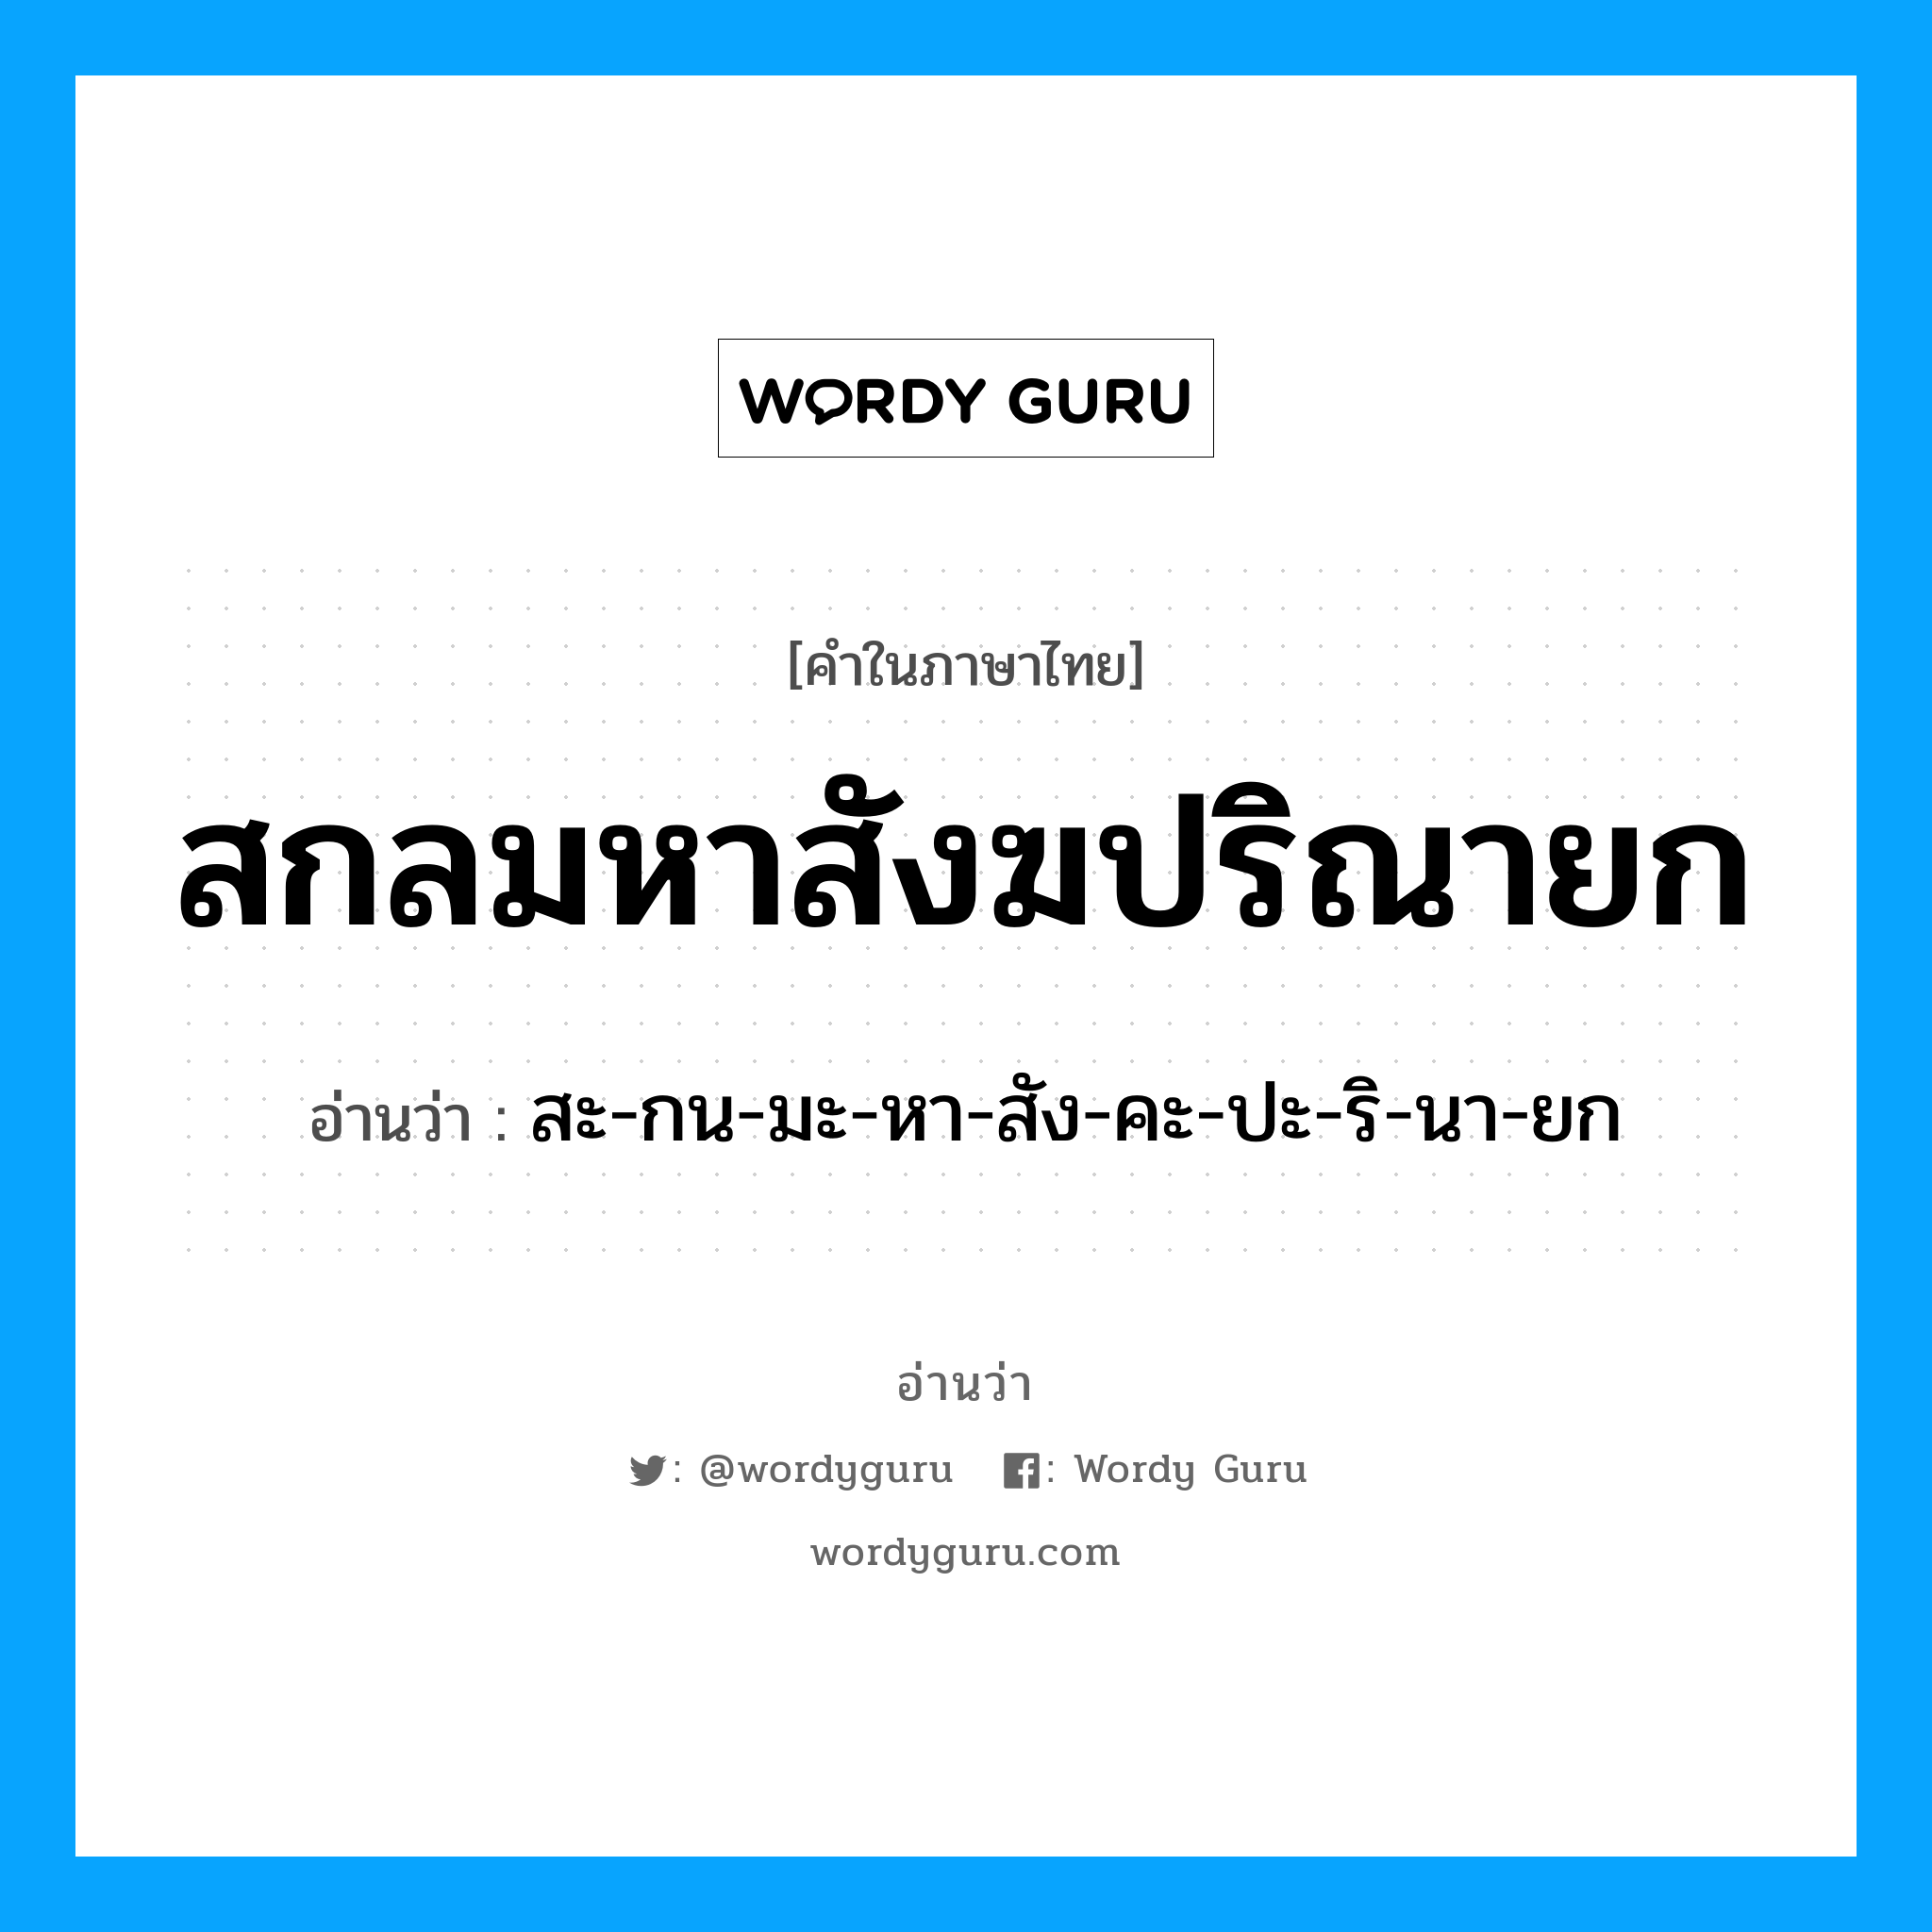 สกลมหาสังฆปริณายก อ่านว่า?, คำในภาษาไทย สกลมหาสังฆปริณายก อ่านว่า สะ-กน-มะ-หา-สัง-คะ-ปะ-ริ-นา-ยก